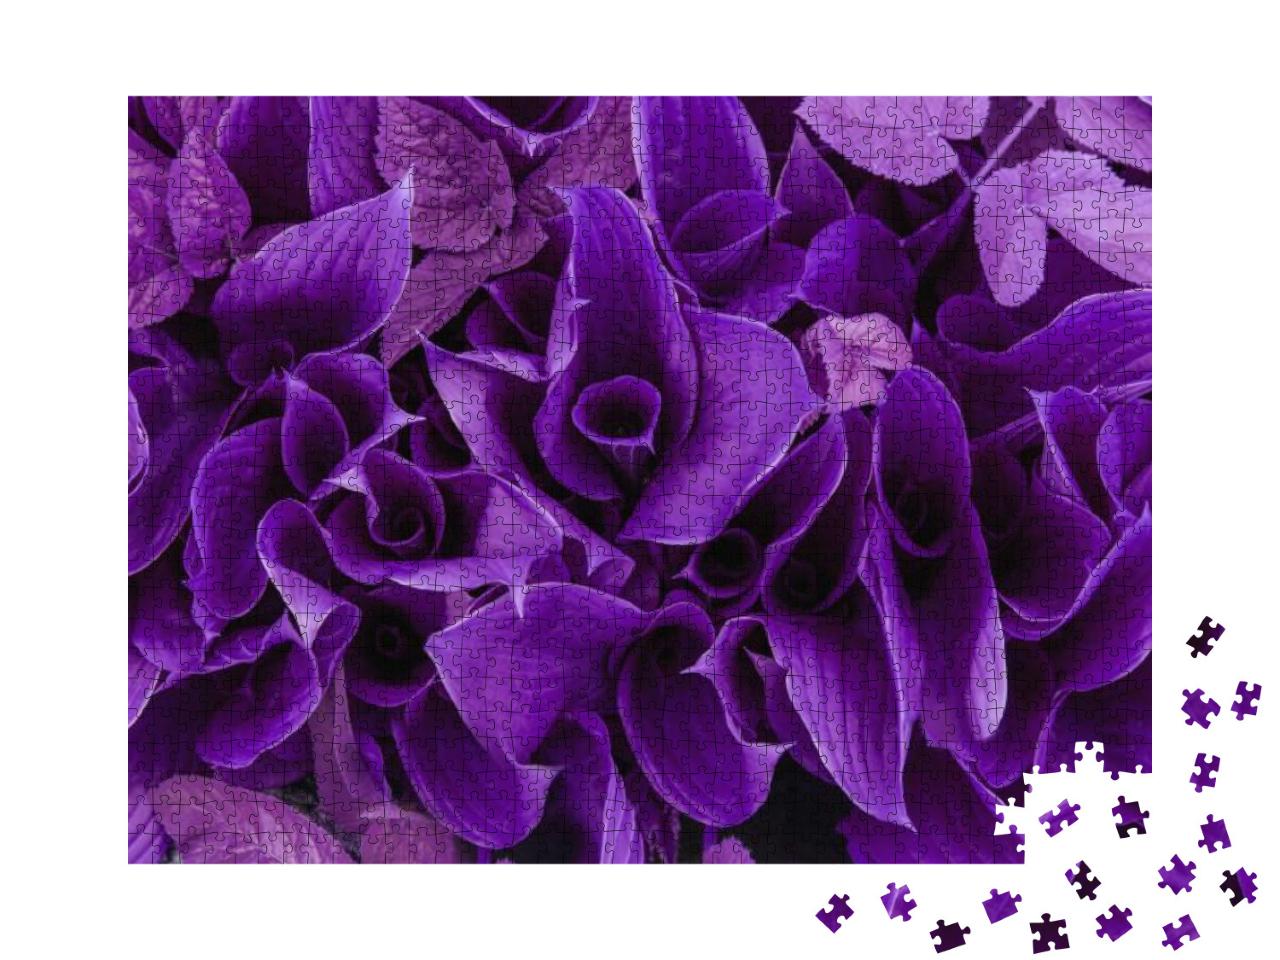 Puzzle 1000 Teile „Blüten und Blätter in Violett“